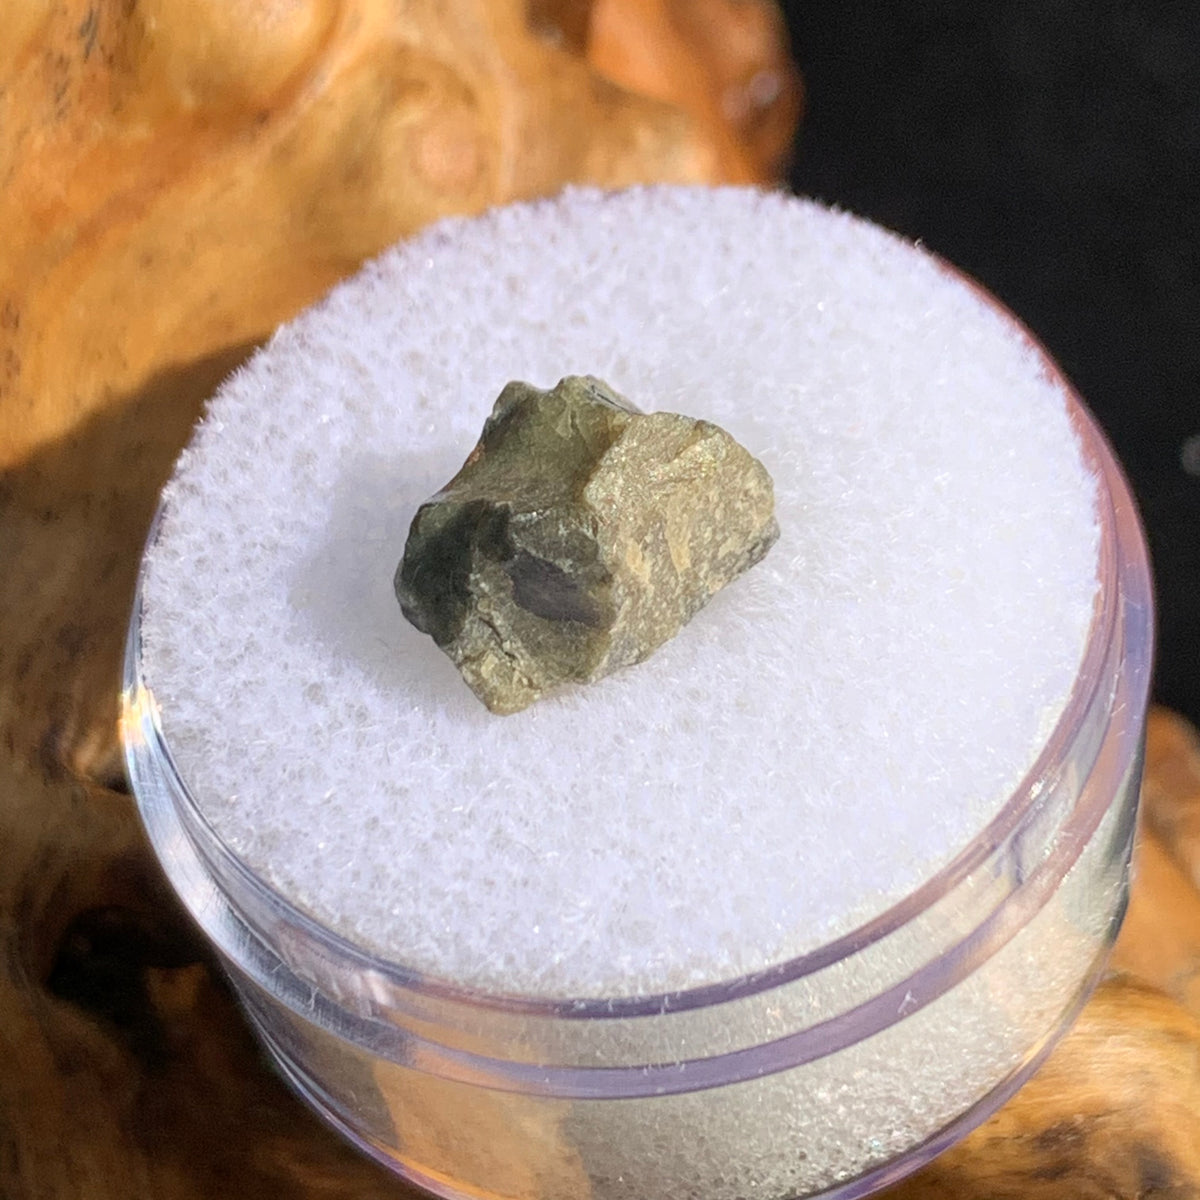 tatahouine meteorite in gem jar sitting on driftwood for display